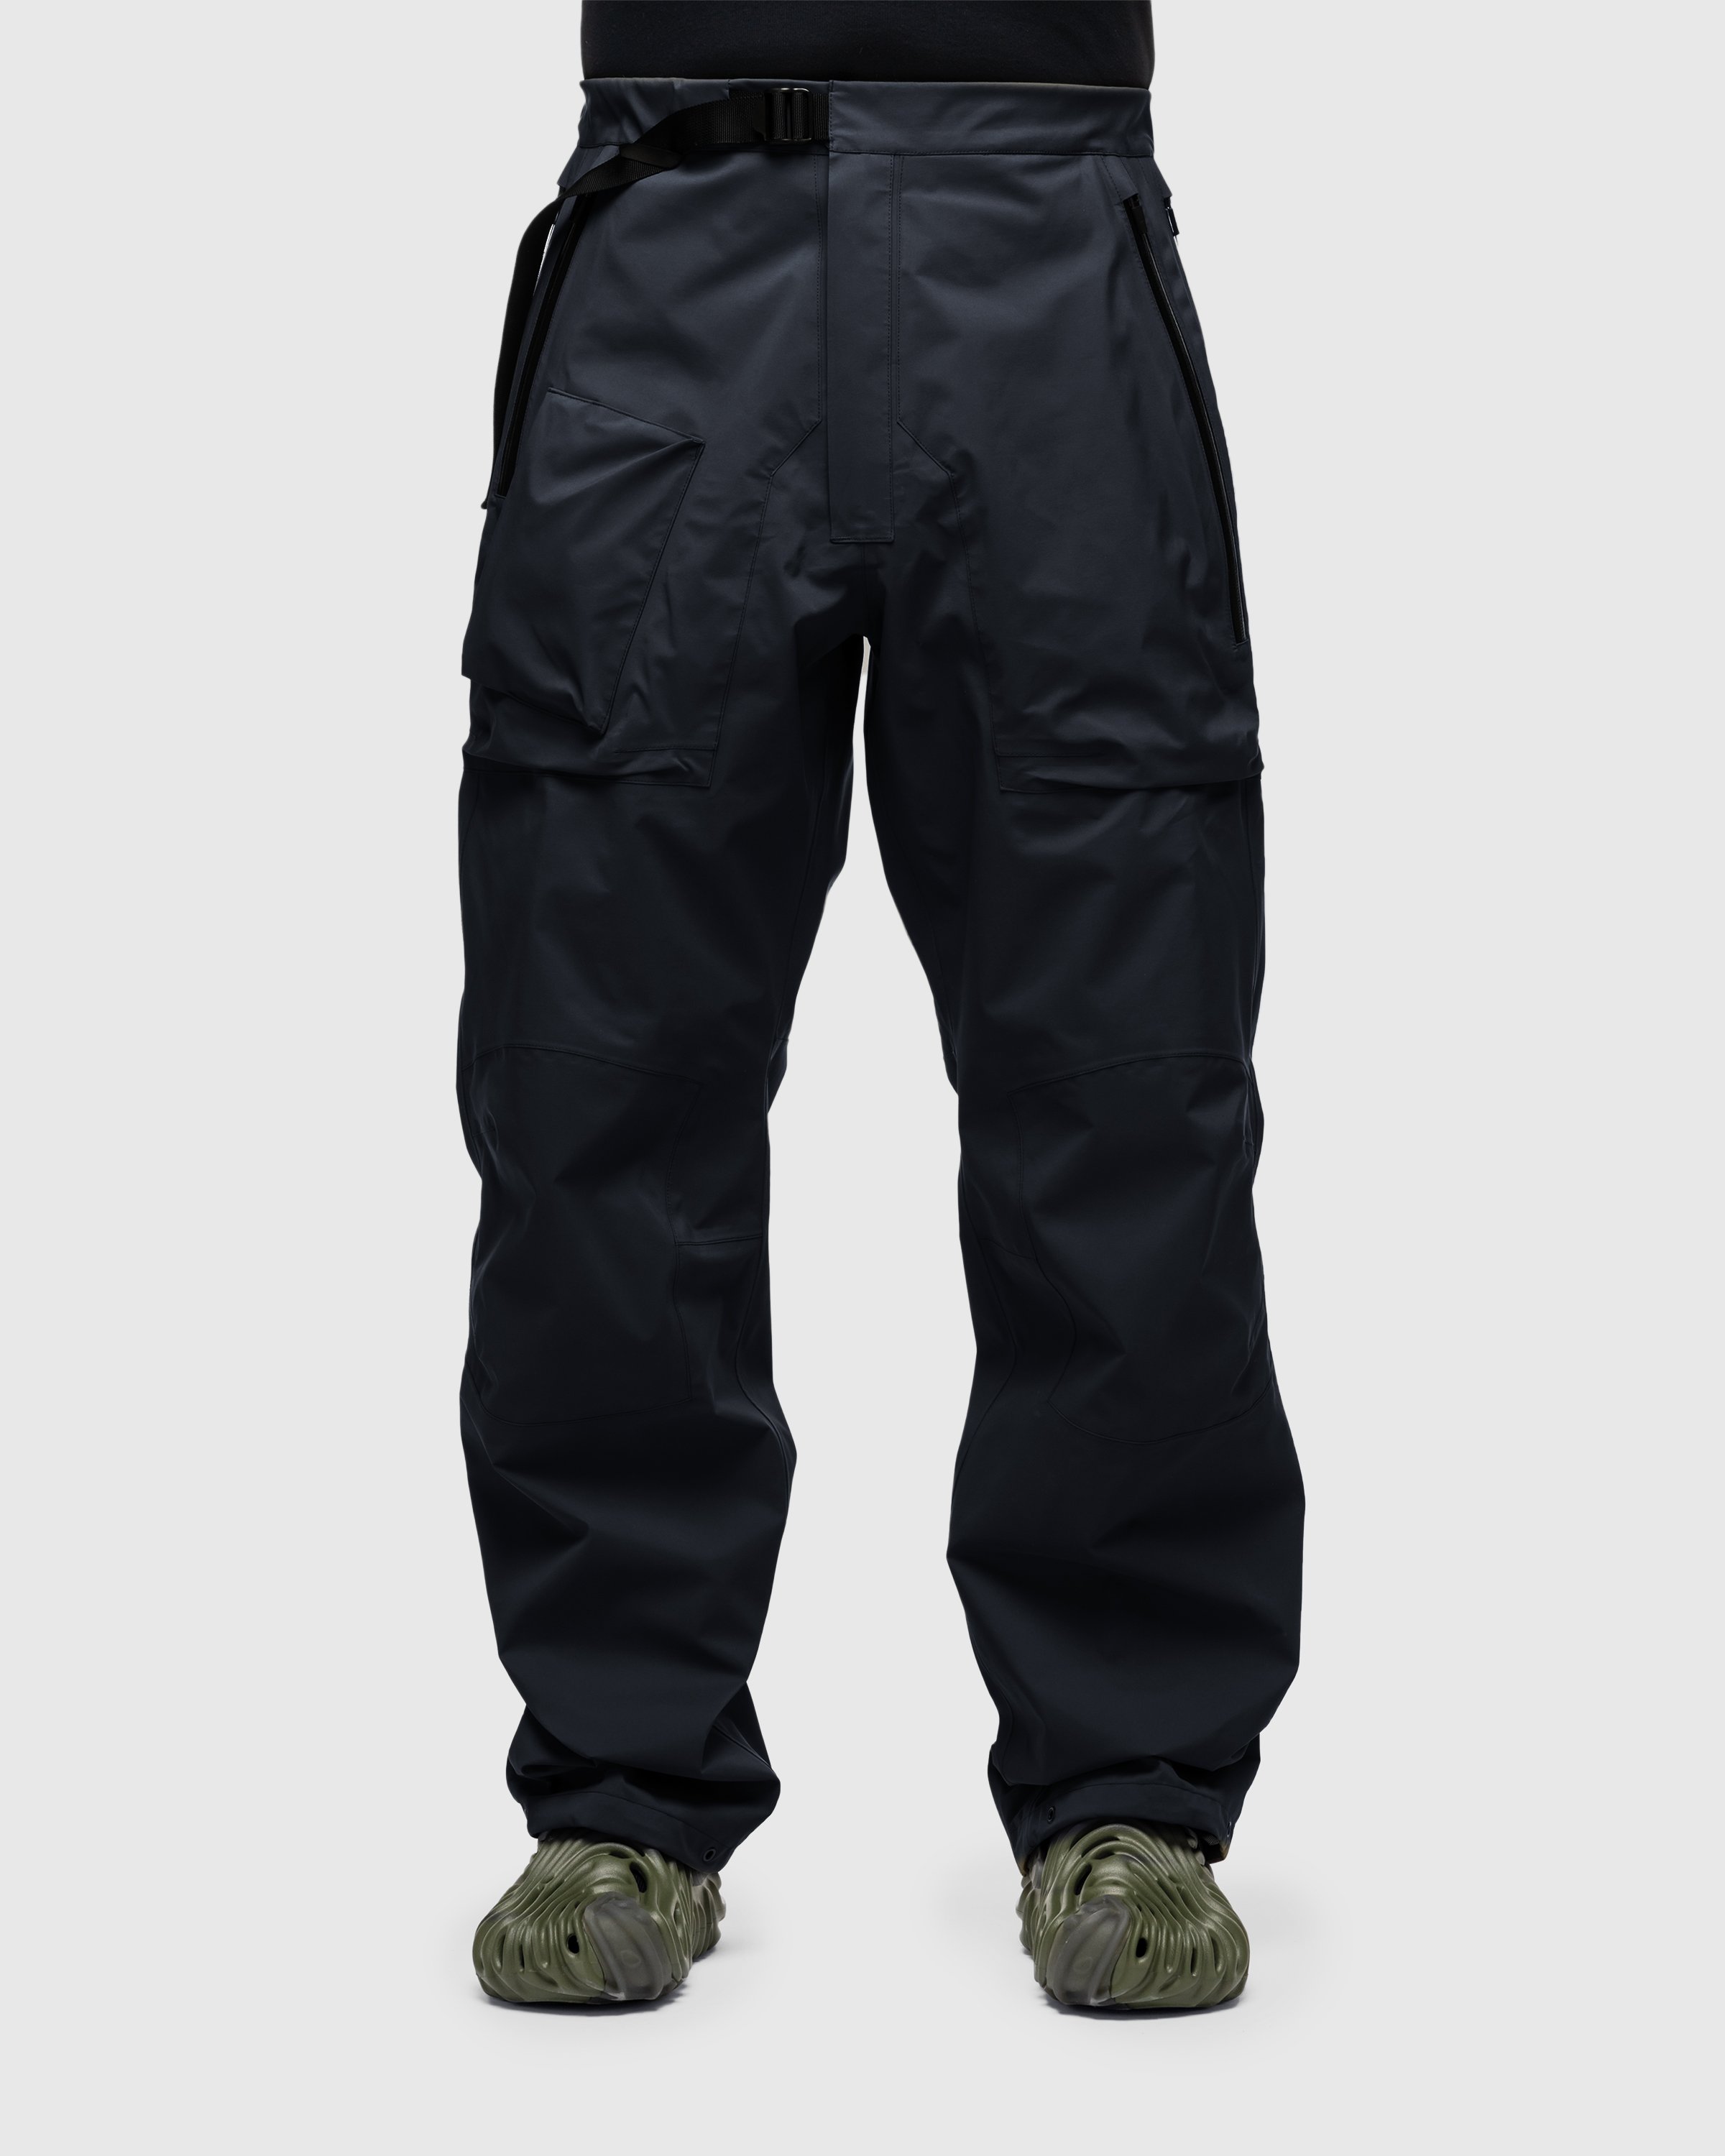 ACRONYM - P44-DS Cargo Pant Black - Clothing - Black - Image 3